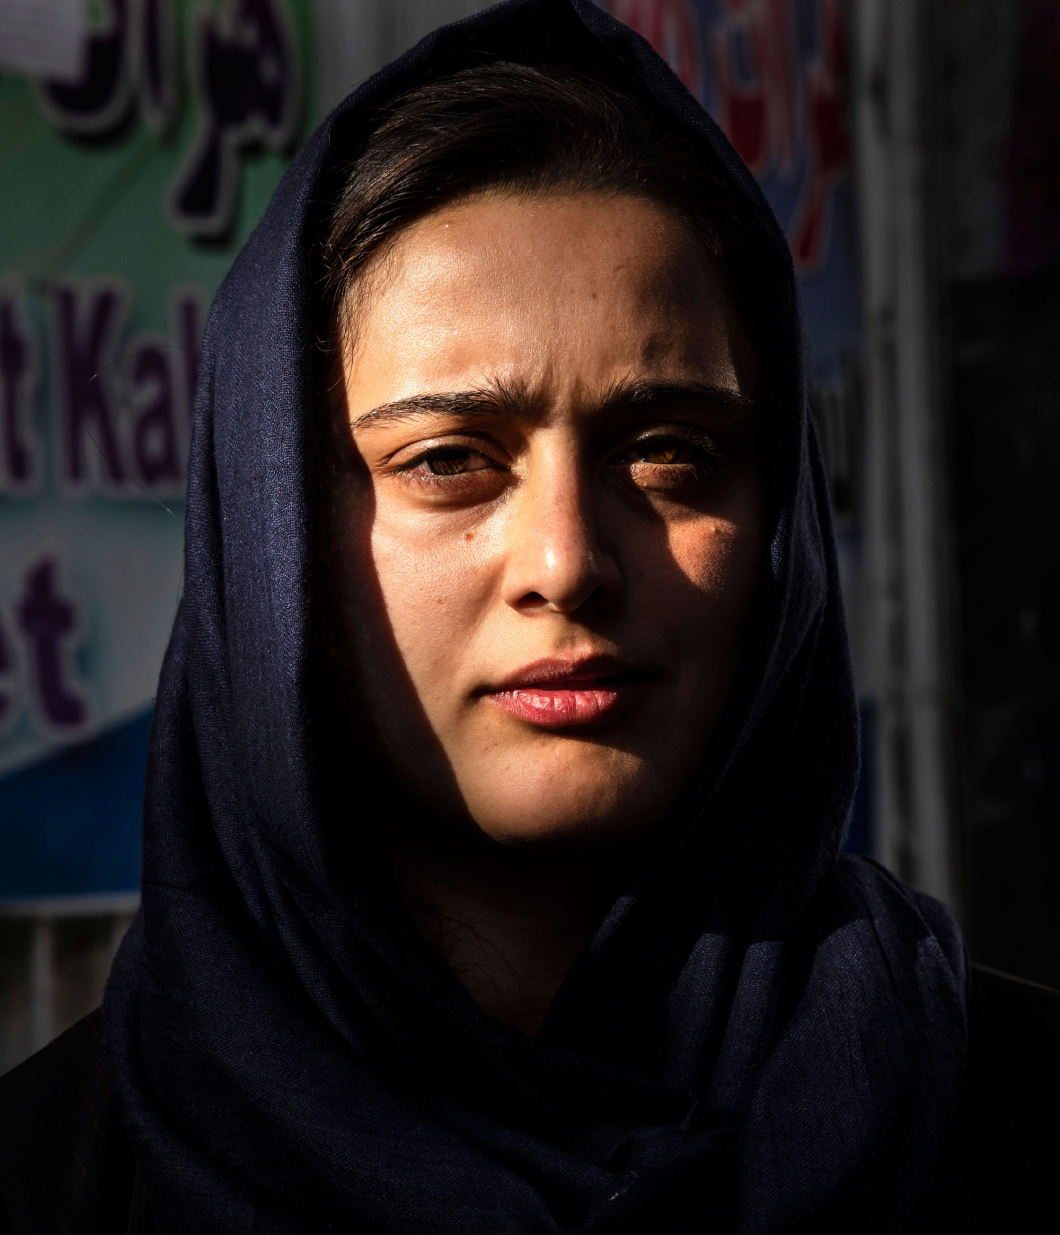 Eltűntek a nők Kabul utcáiról, rettegve várják a sorsukat